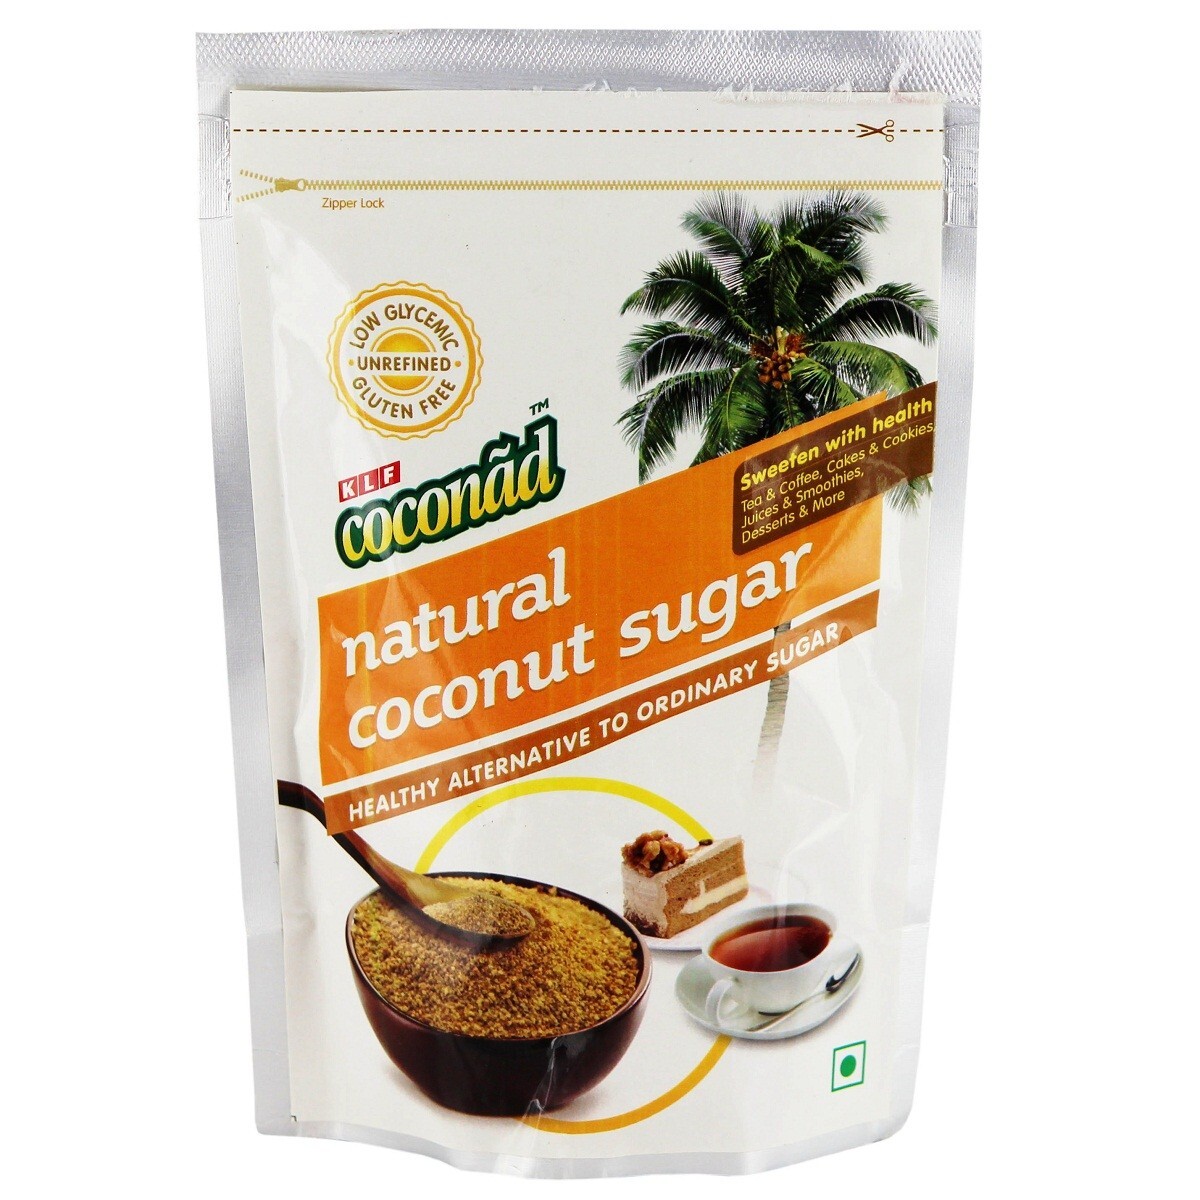 KLF Coconad Natural Coconut Sugar 100g